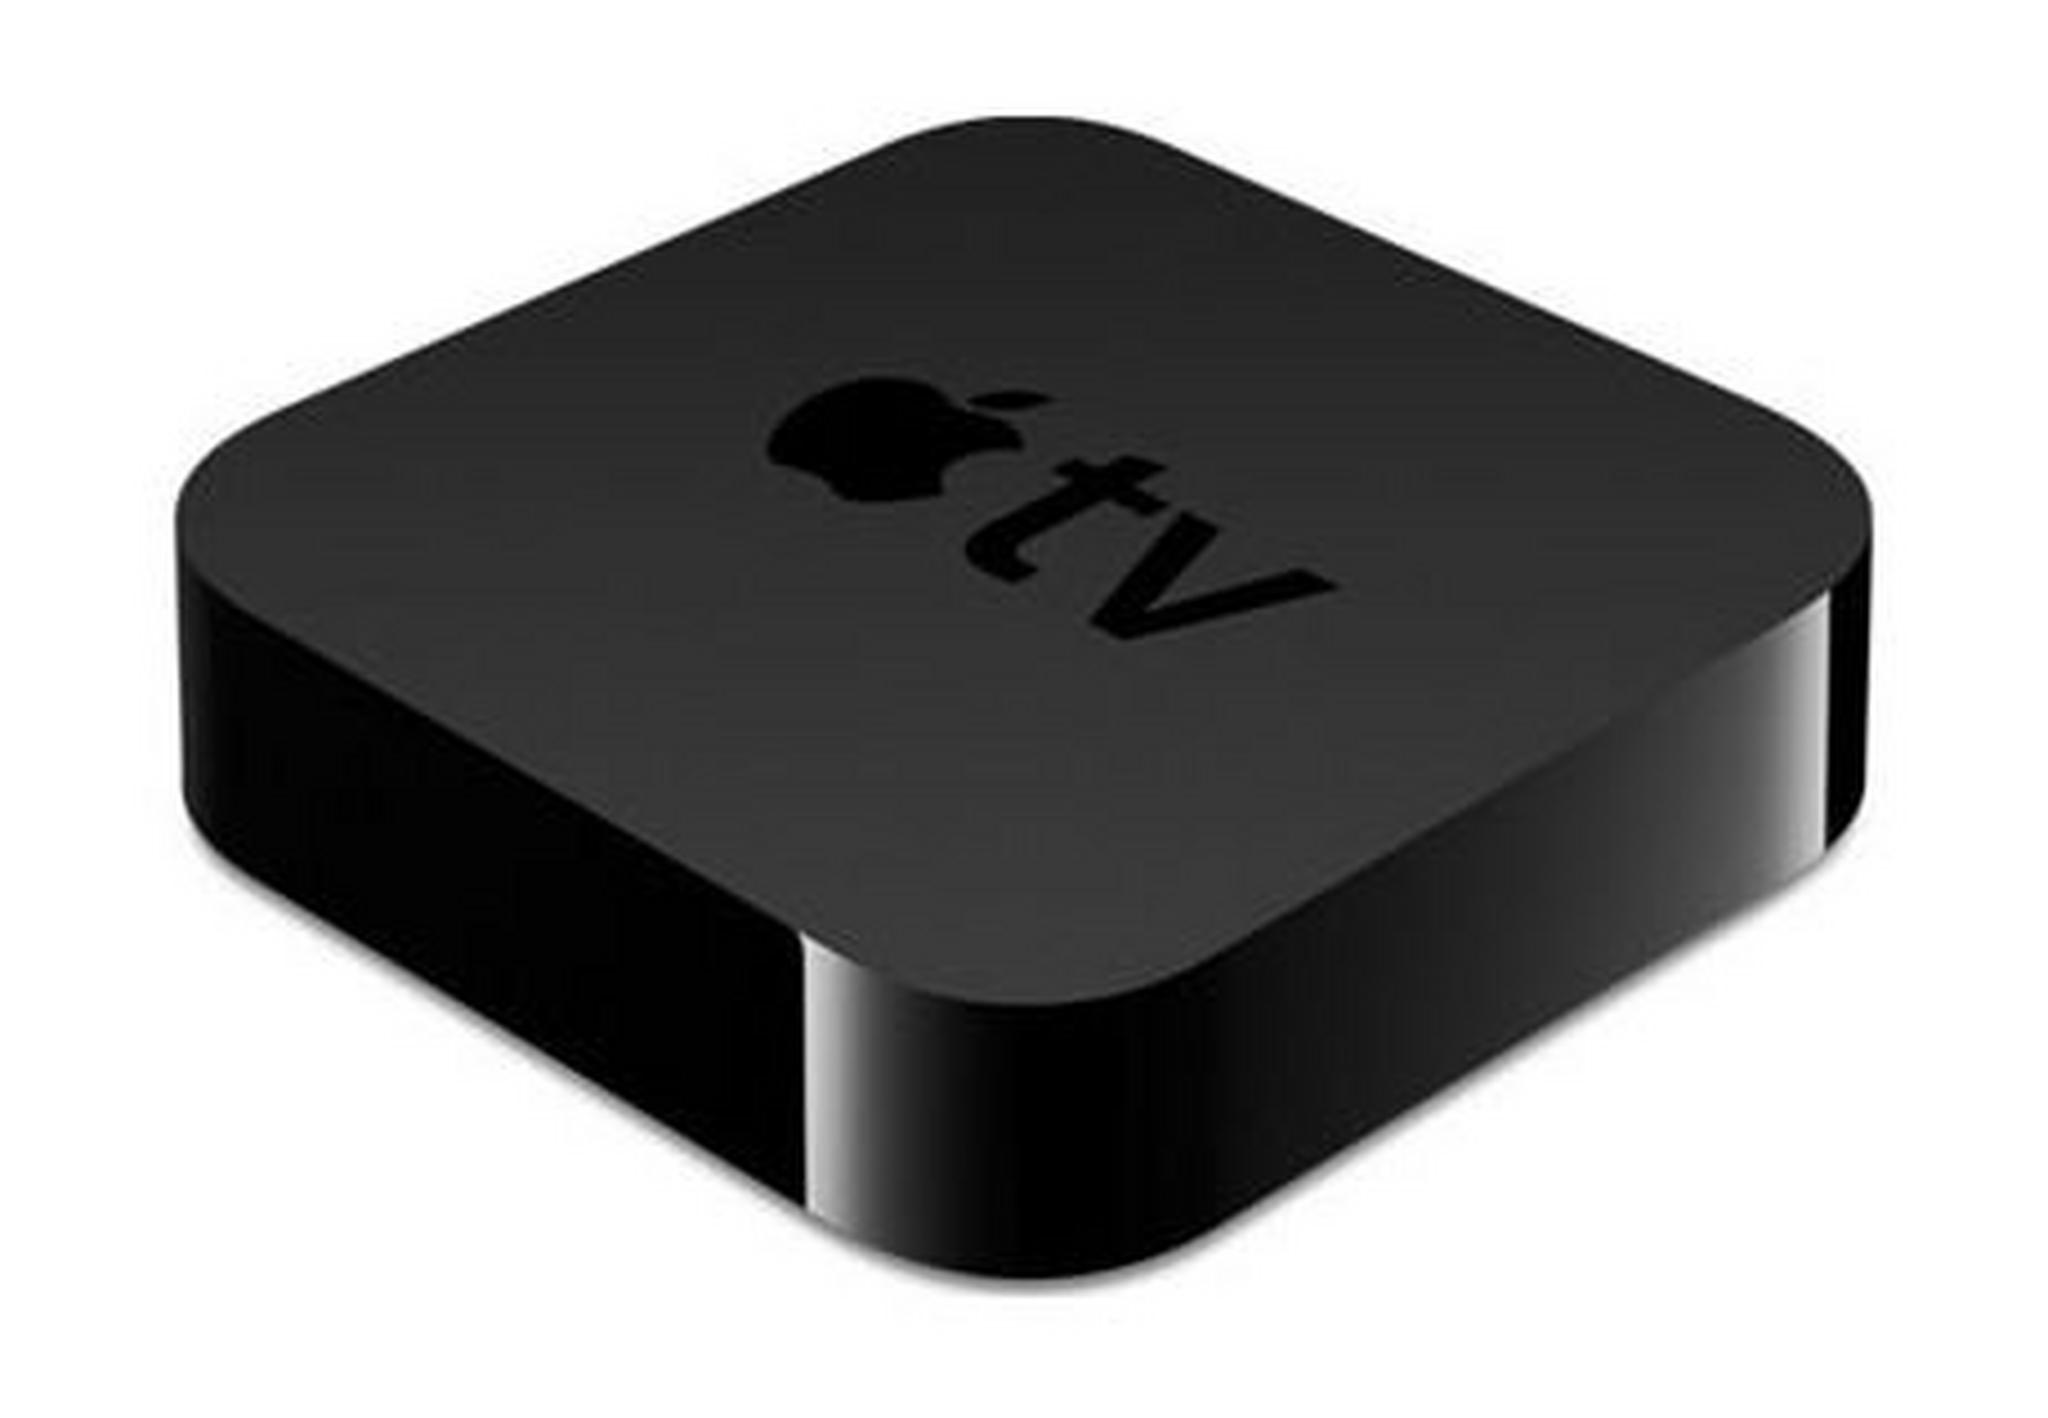 Apple TV 3rd Generation (1080p) MD199LL